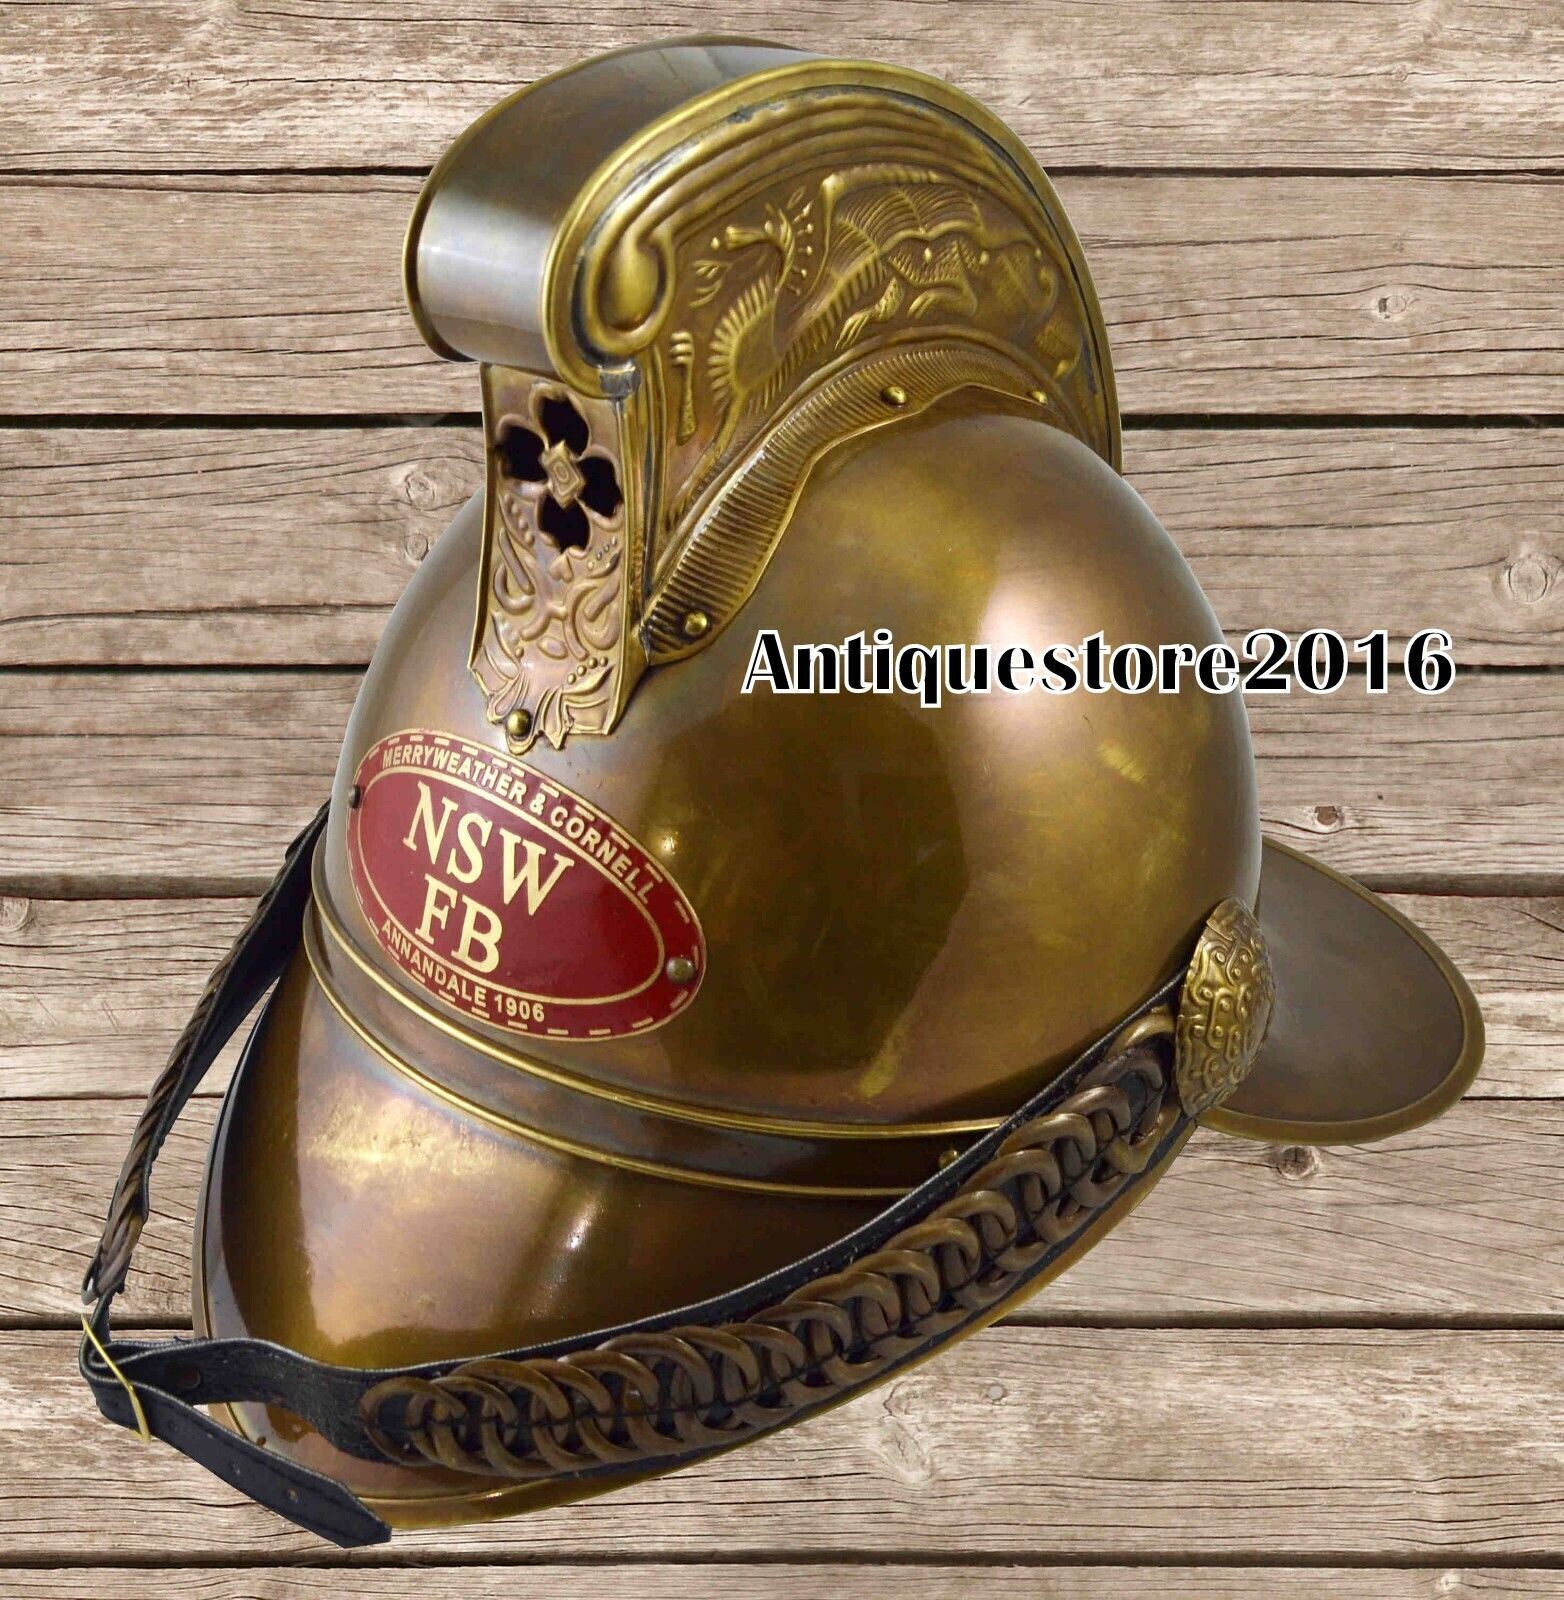 Halloween brass maritime nsw fb fireman helmet antique finish fire brigade gift